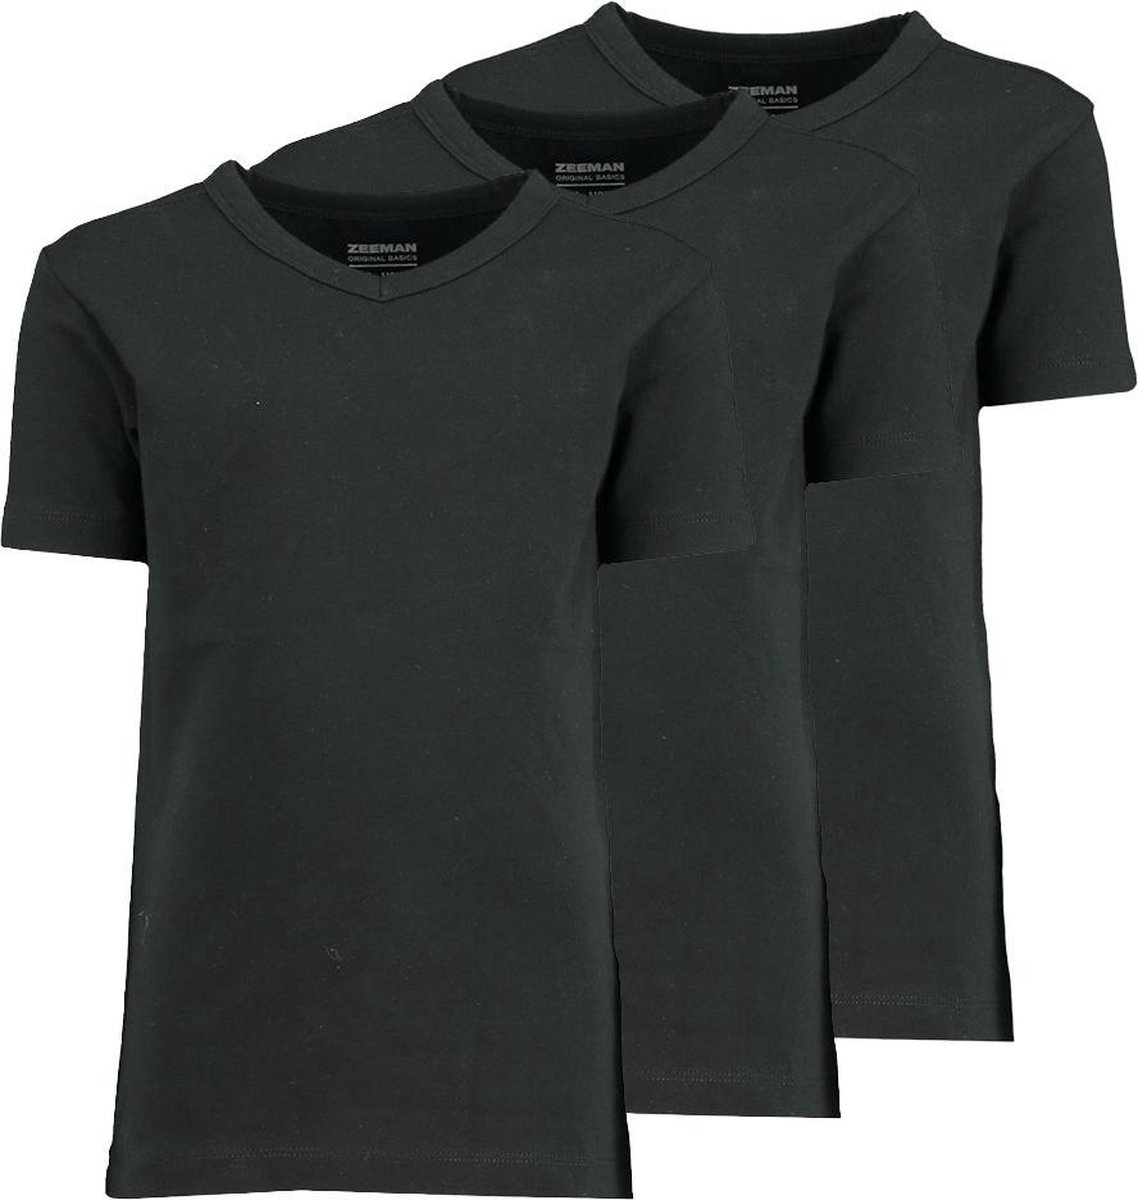 Zeeman kinder jongens T-shirt korte mouw - zwart - maat 92 - 3 stuks